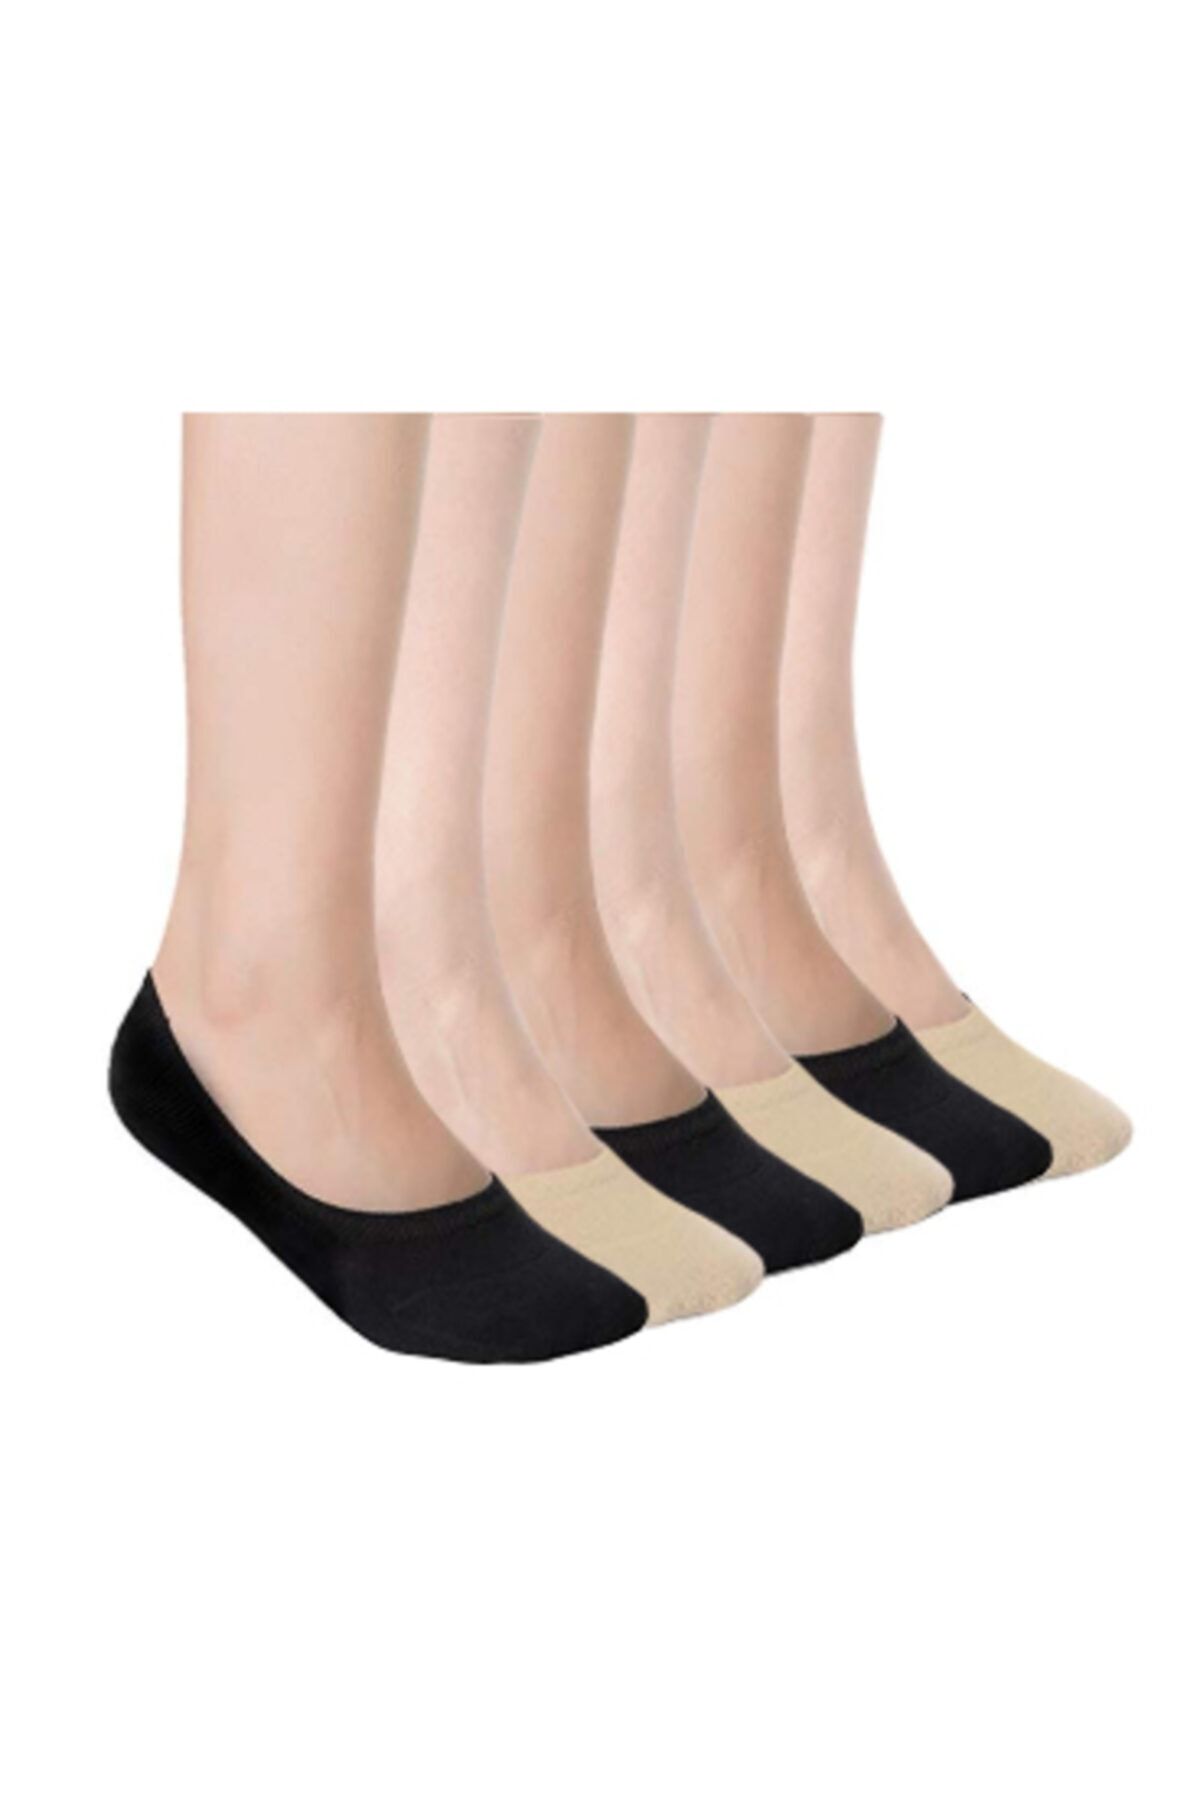 socksbox Bambu Silikonlu Unisex Babet Çorabı | Siyah Ve Krem Rengi 8'li